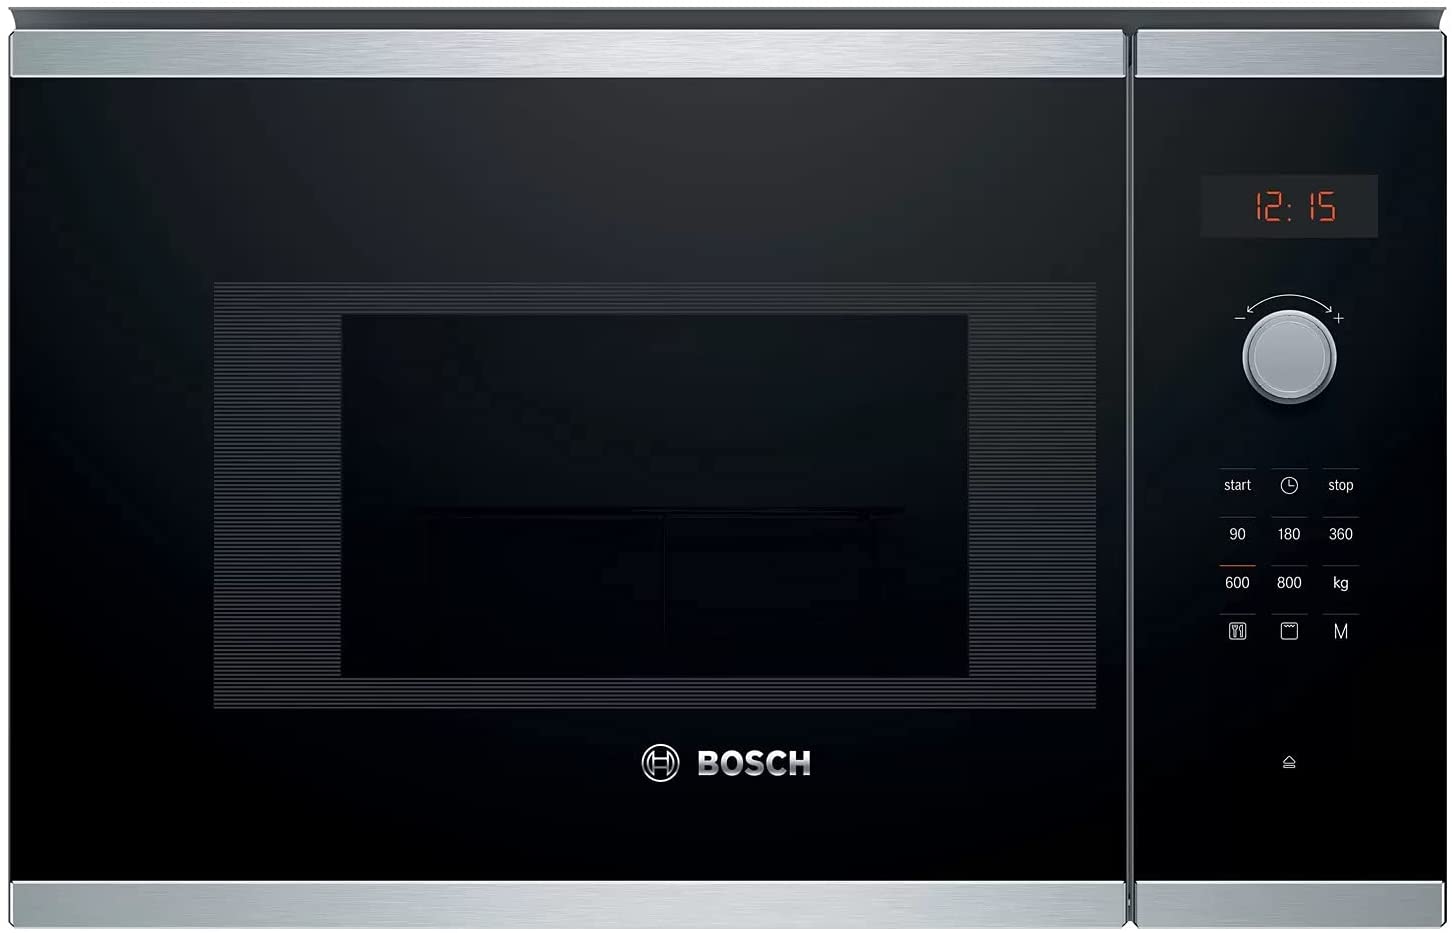 Los mejores electrodomésticos Bosch para tu hogar